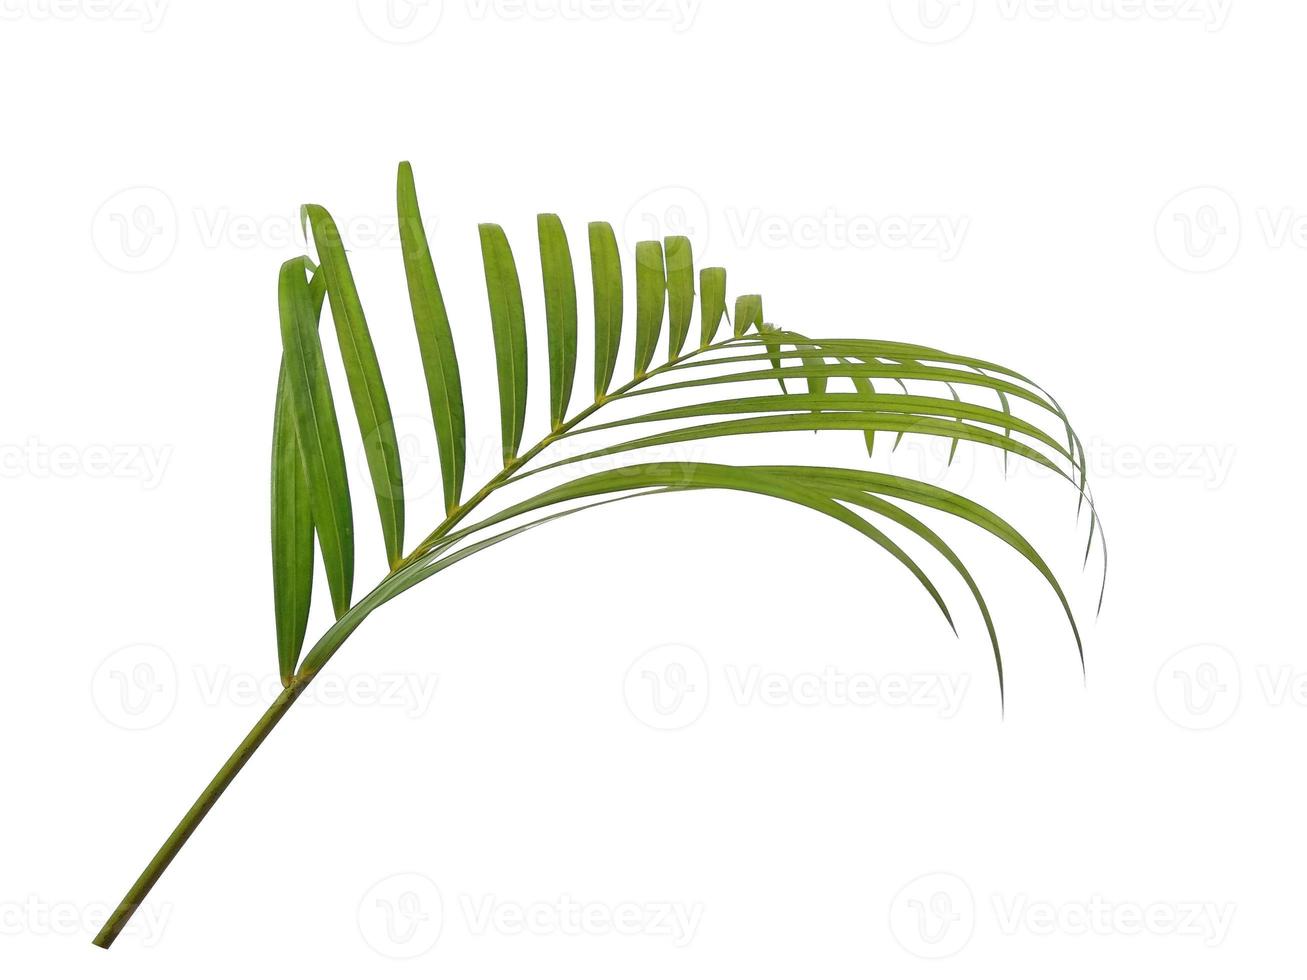 hojas frescas de palma de bambú o hoja de palma sobre fondo blanco foto